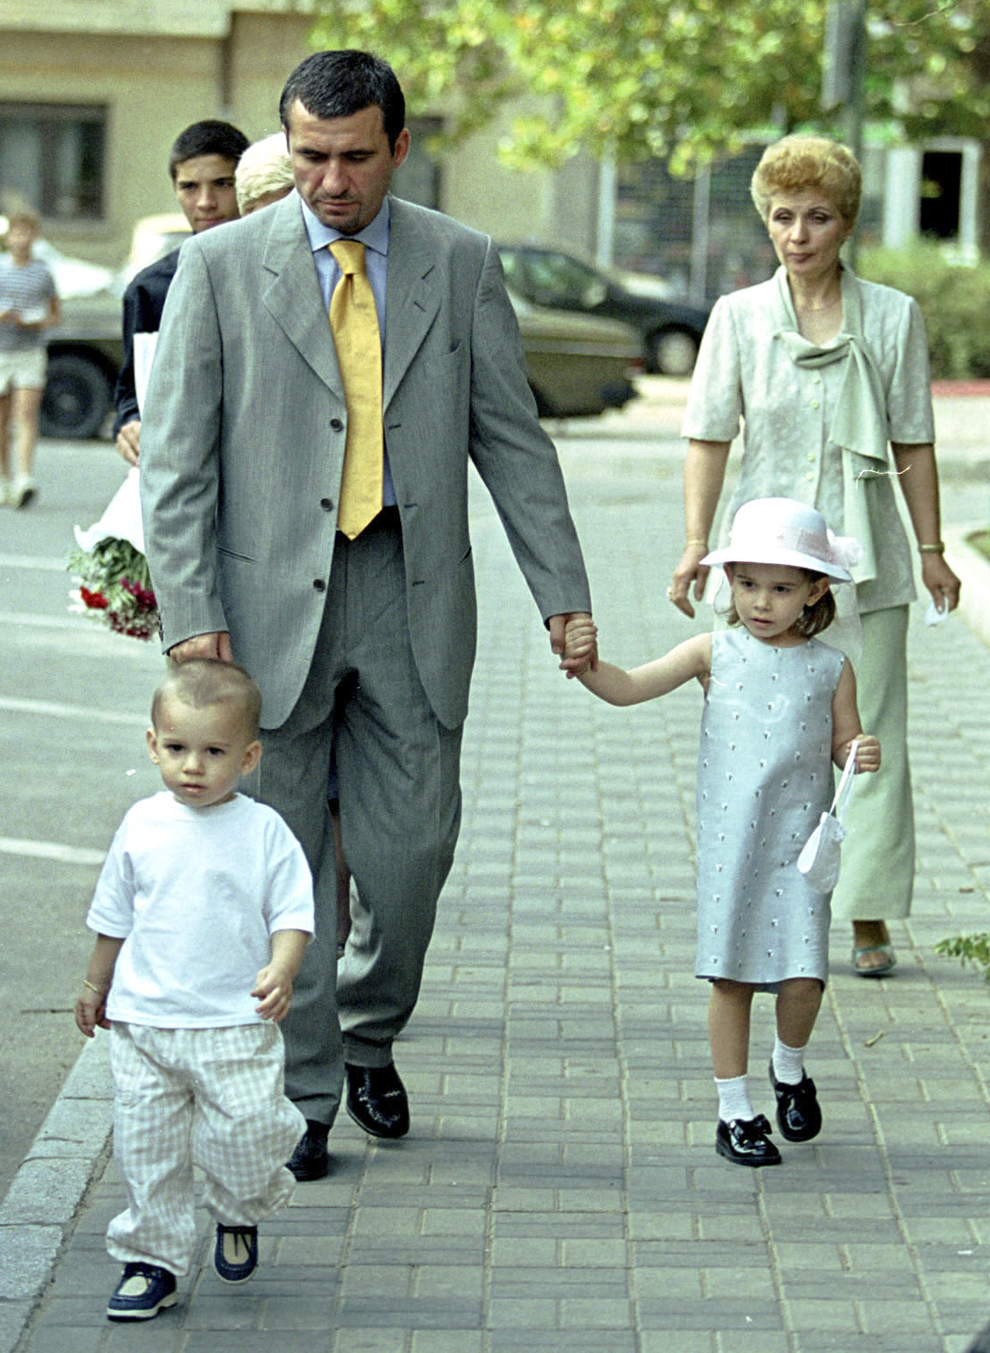 Gheorghe Hagi împreună cu copiii săi, Ianis şi Kira, sosind la cununia civilă a lui Adrian Mutu şi Alexandra Dinu, în Bucureşti, duminică, 27 august 2000.